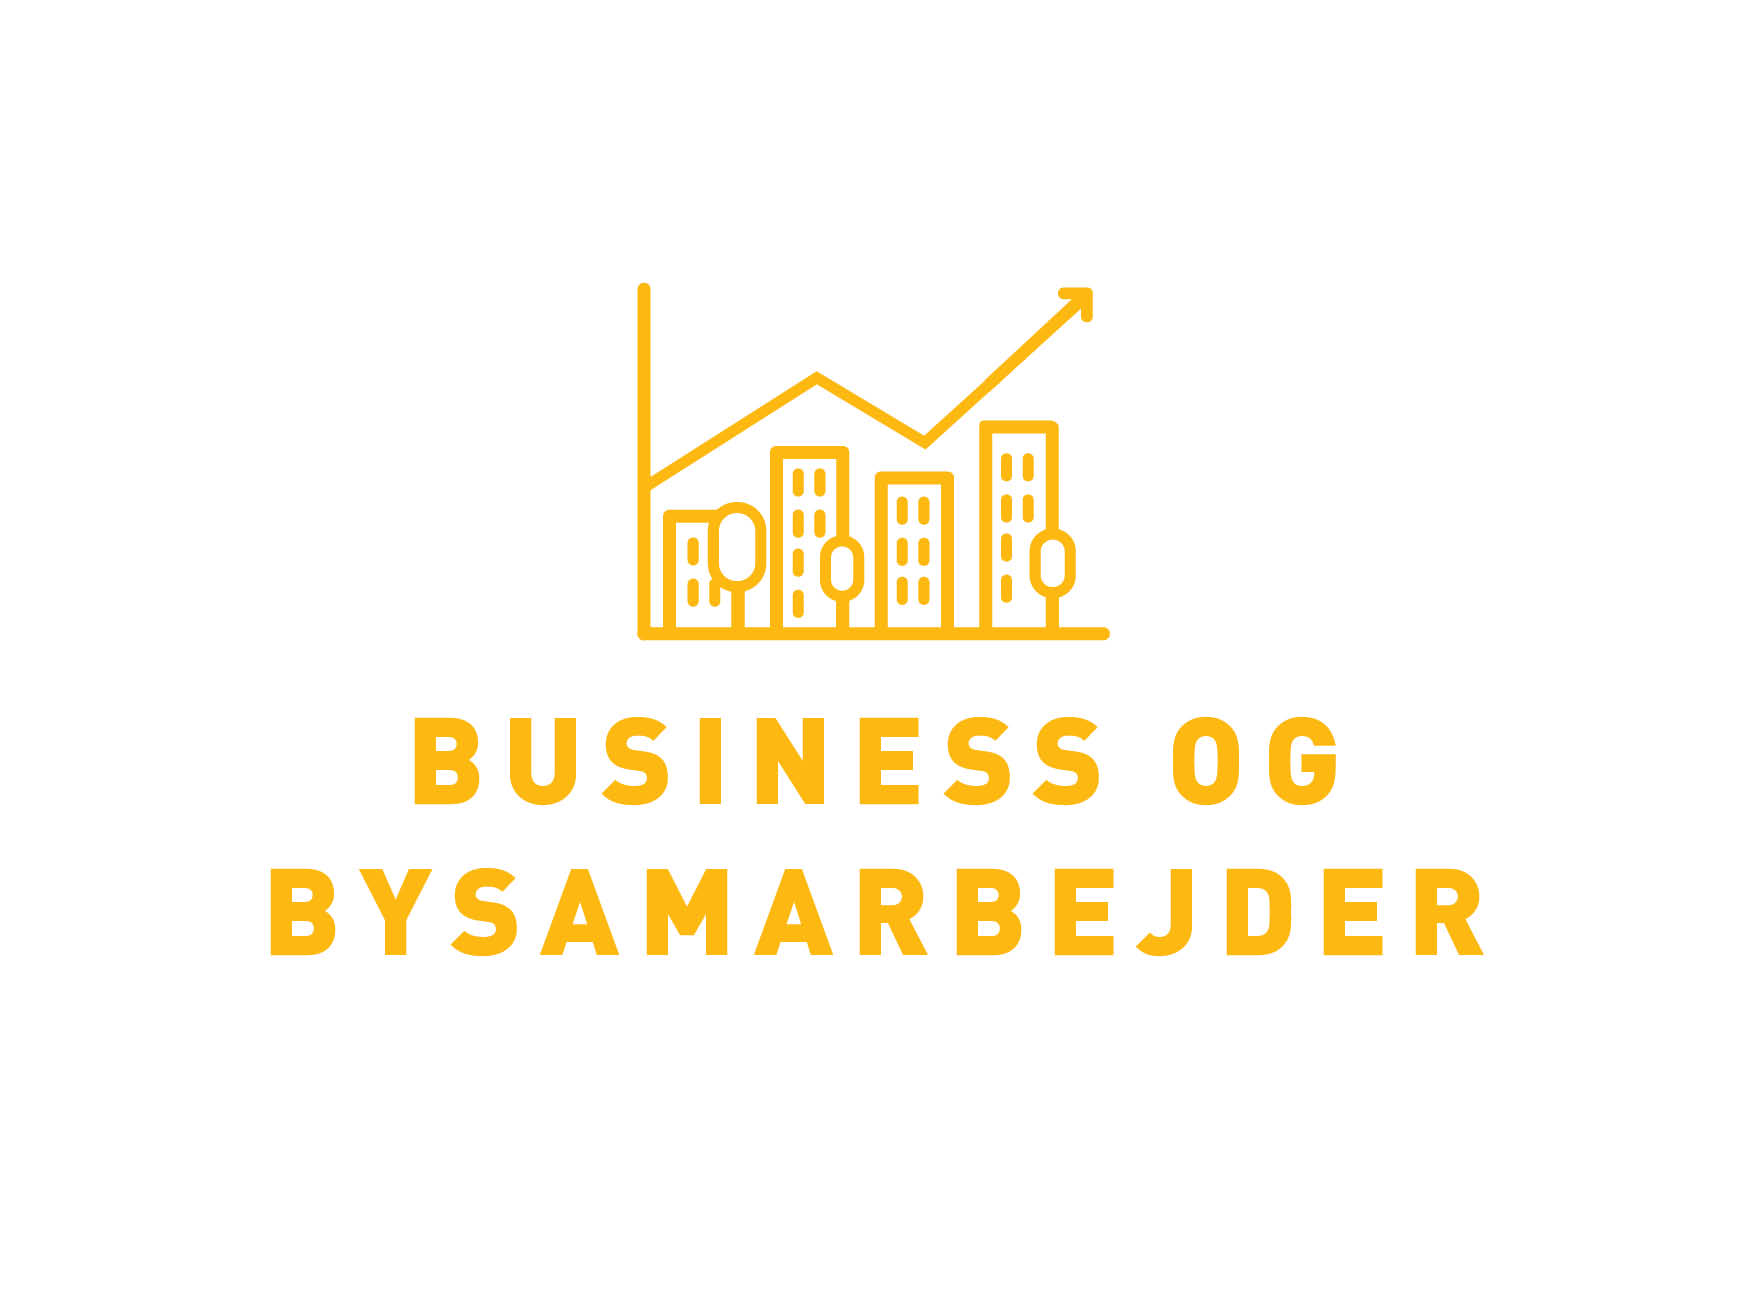   Kunde:   Dansk Byplanlaboratorium   Grafik til konference:   Design af logo og identitet   